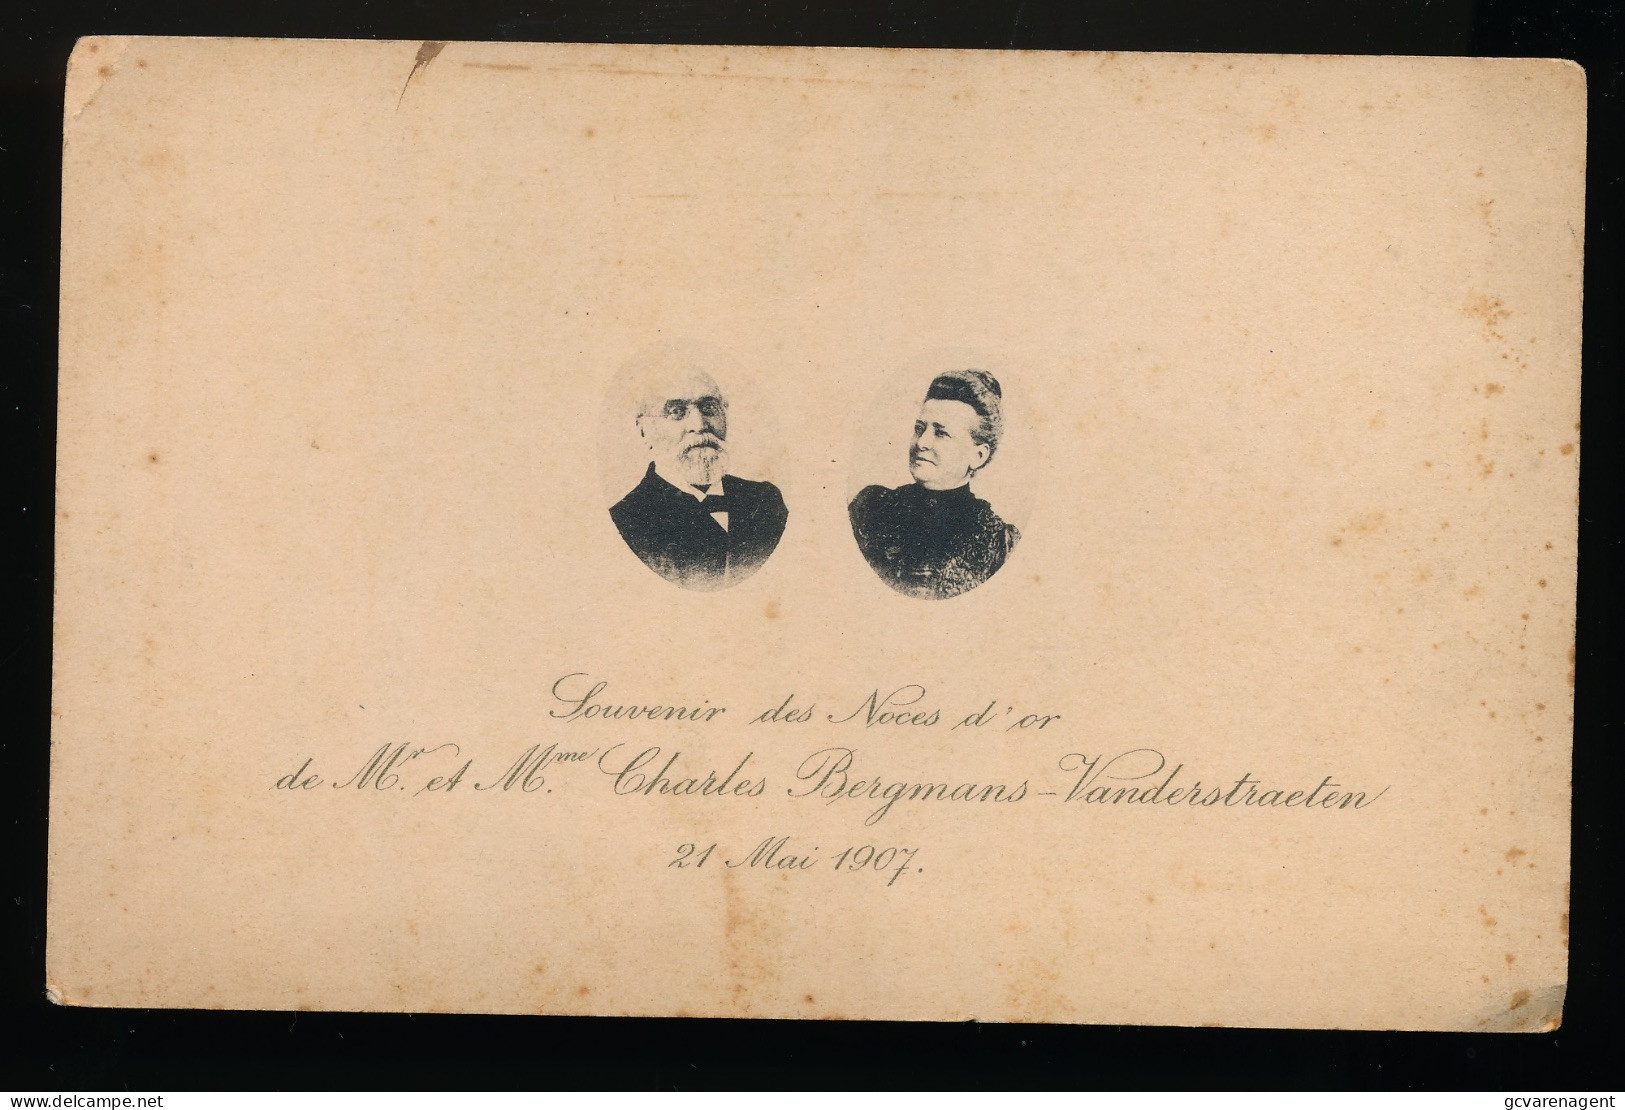 SOUVENIR DES NOCES D'OR Mr ET Mme CH.BERGMANS - VANDERSTRAETEN 21 MAI 1907  16 X 10 CM   2 SCANS - Wedding